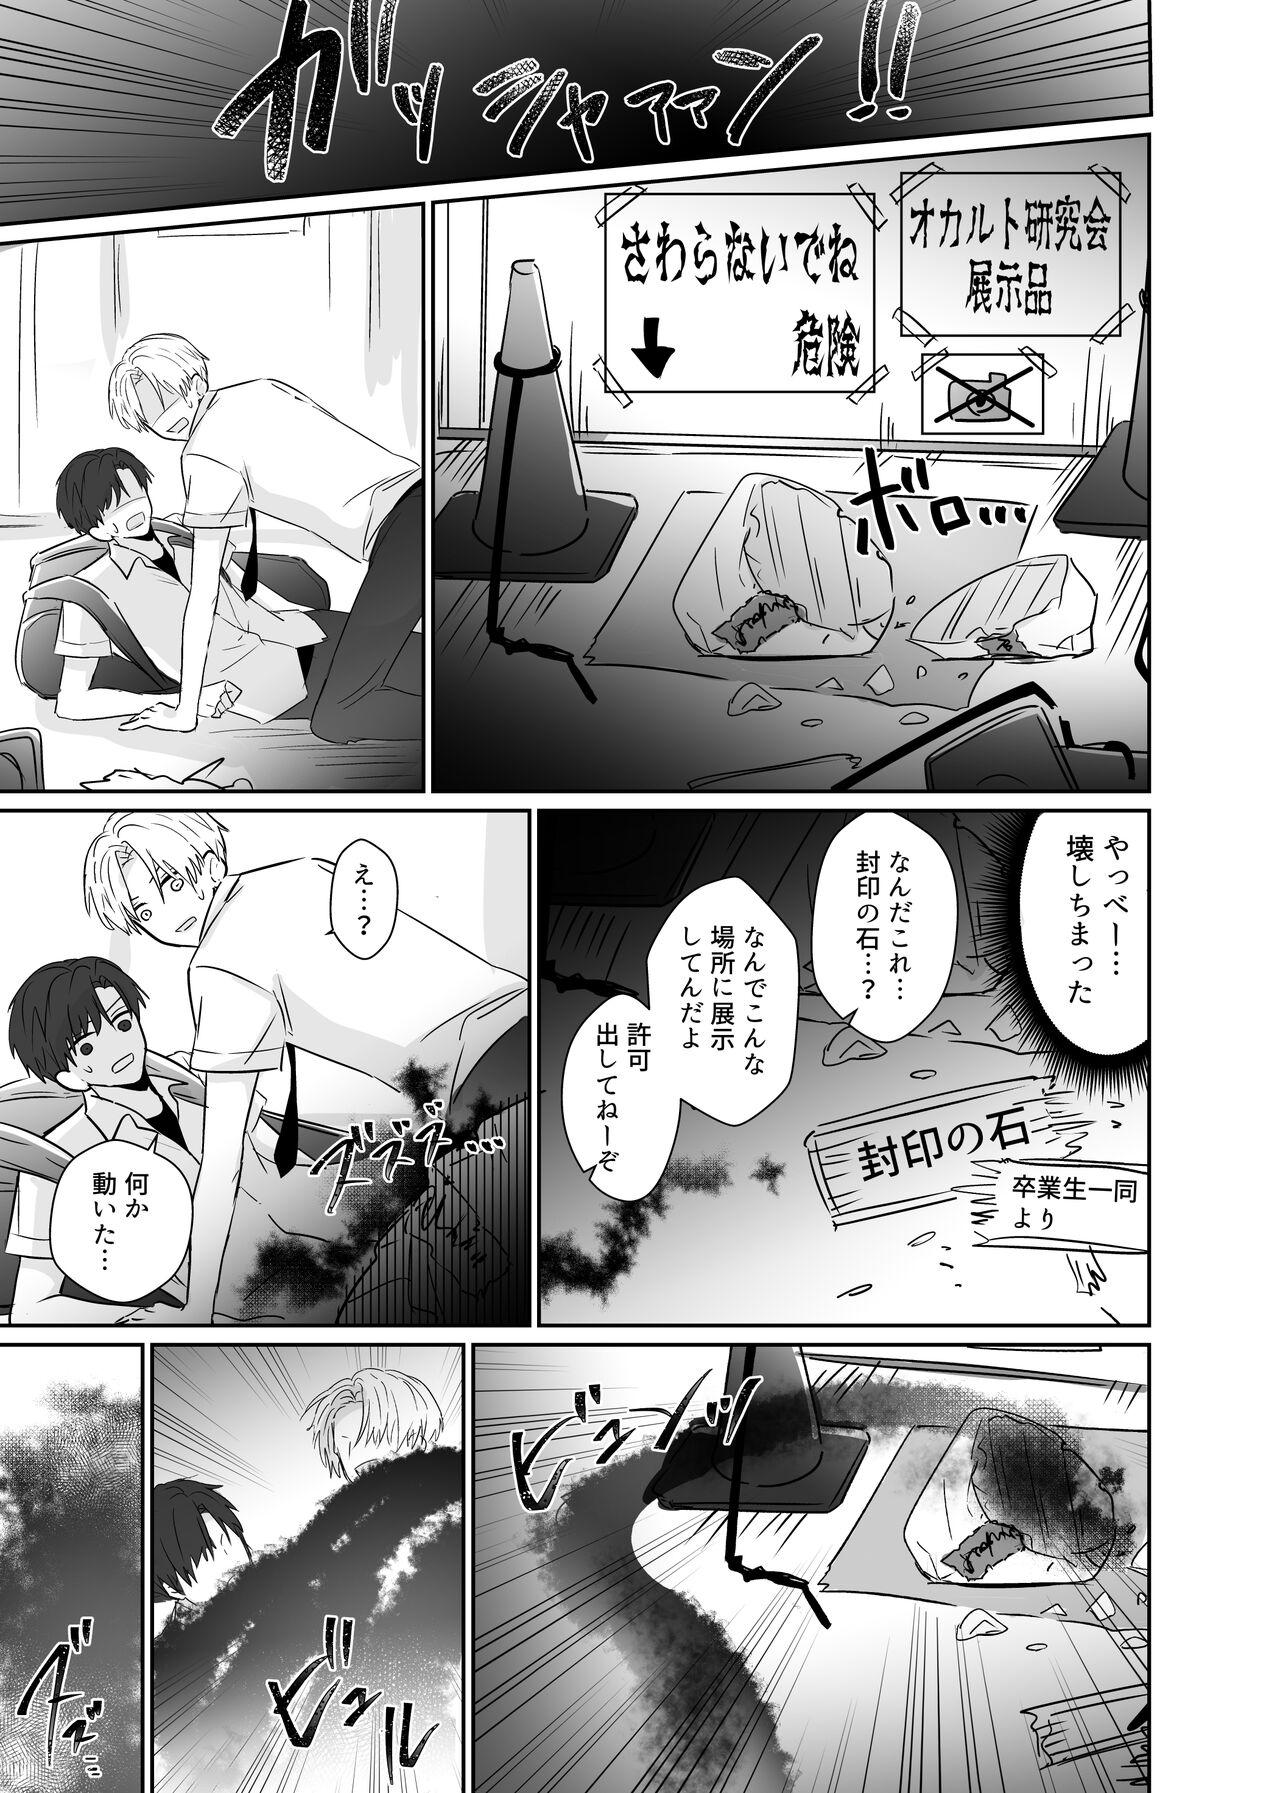 Chouzetsu Funaka na Danshikousei Futari ga, Ecchi shinai to Shinu Noroi o Kakerareru Sokuochi 2-koma Manga 6